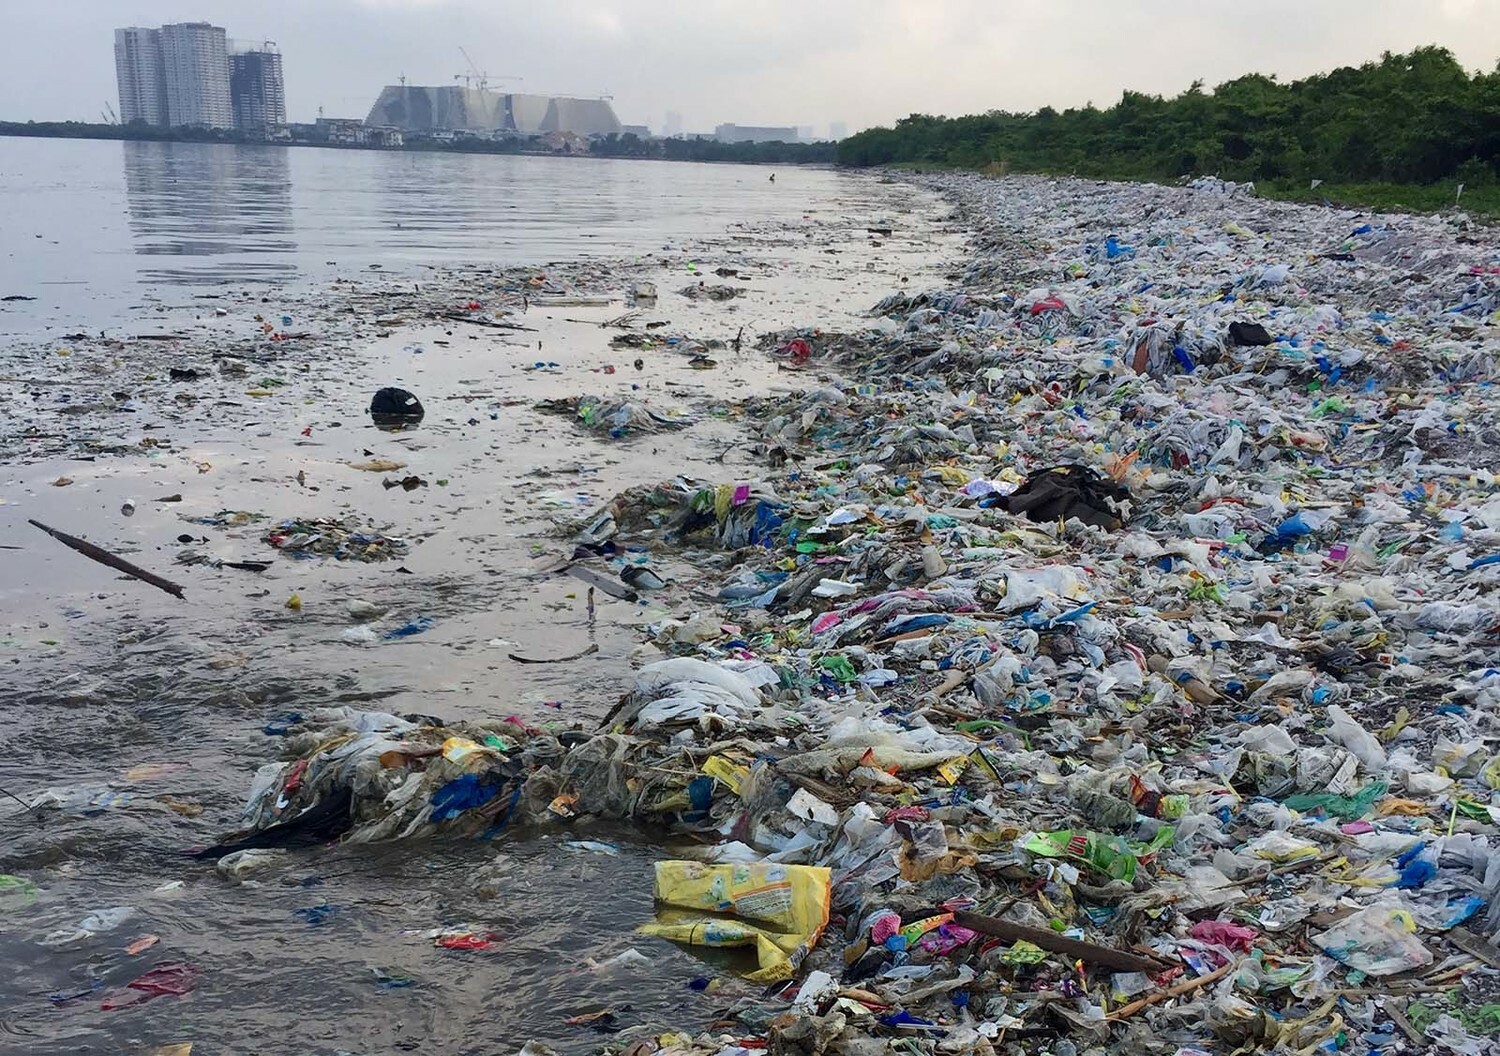 Загрязнение пластиком